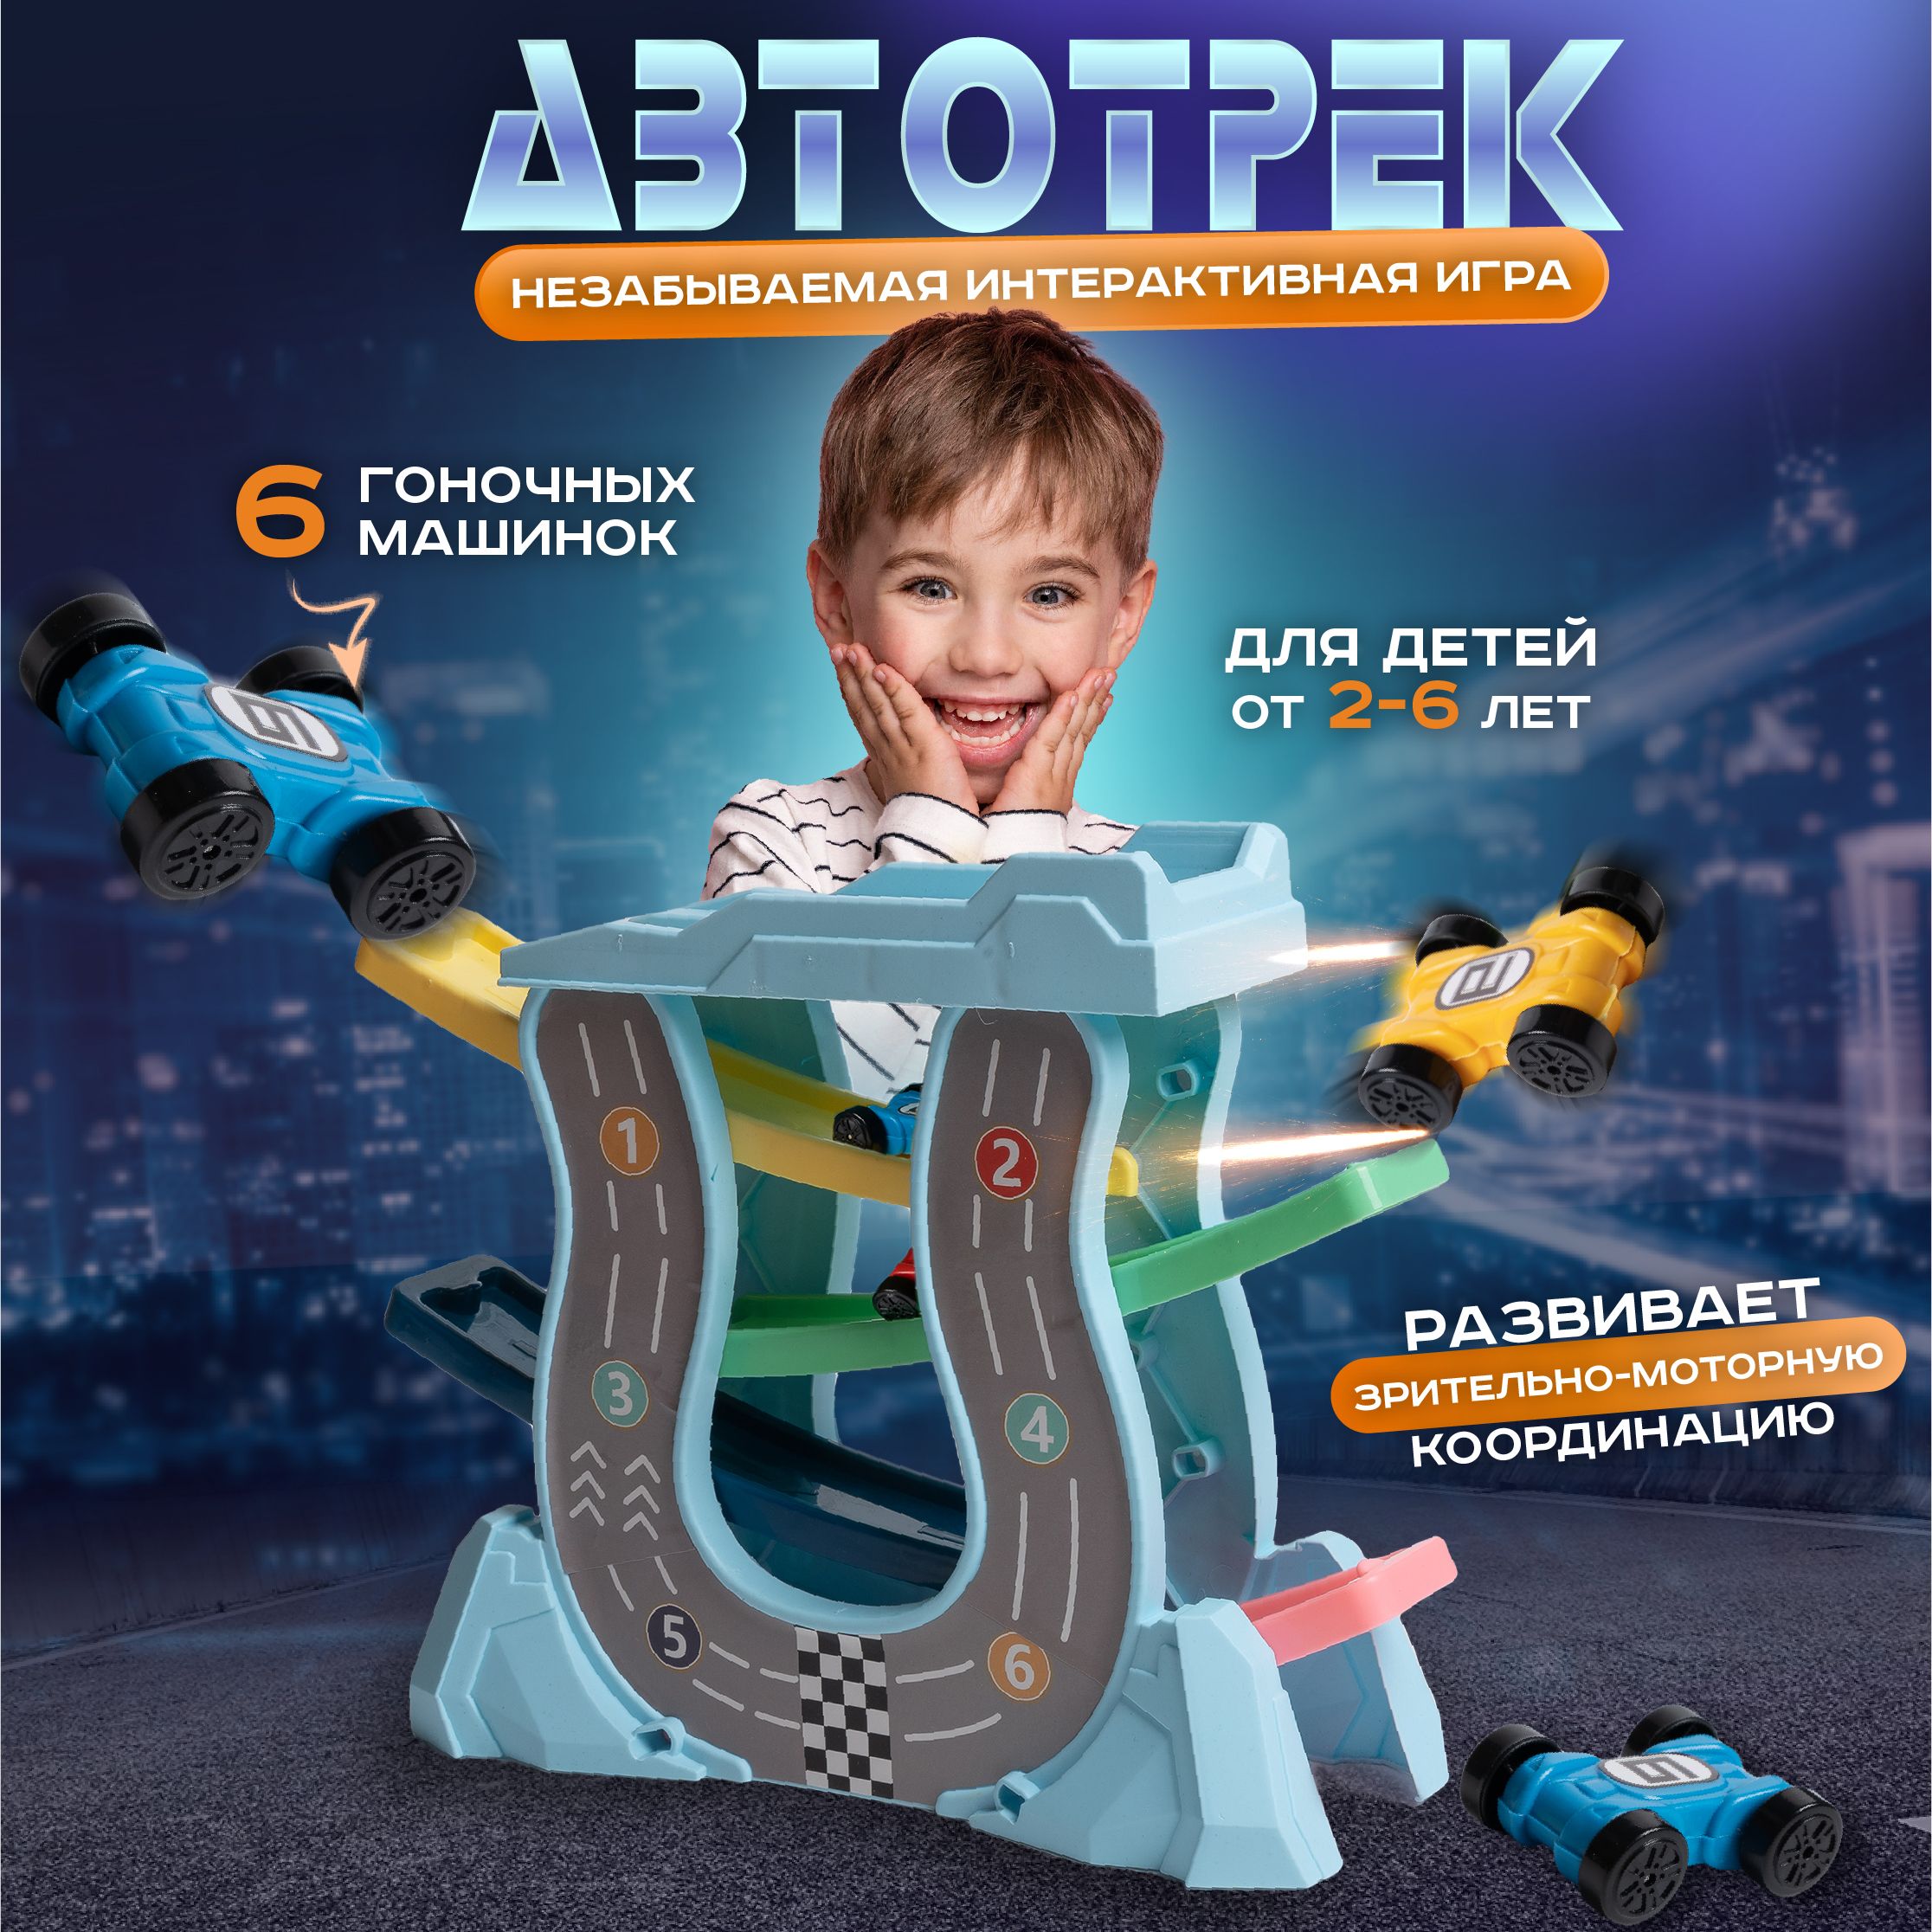 Игрушки автотреки для детей. Купить детский автотрек в Москве: цены, отзывы, фото